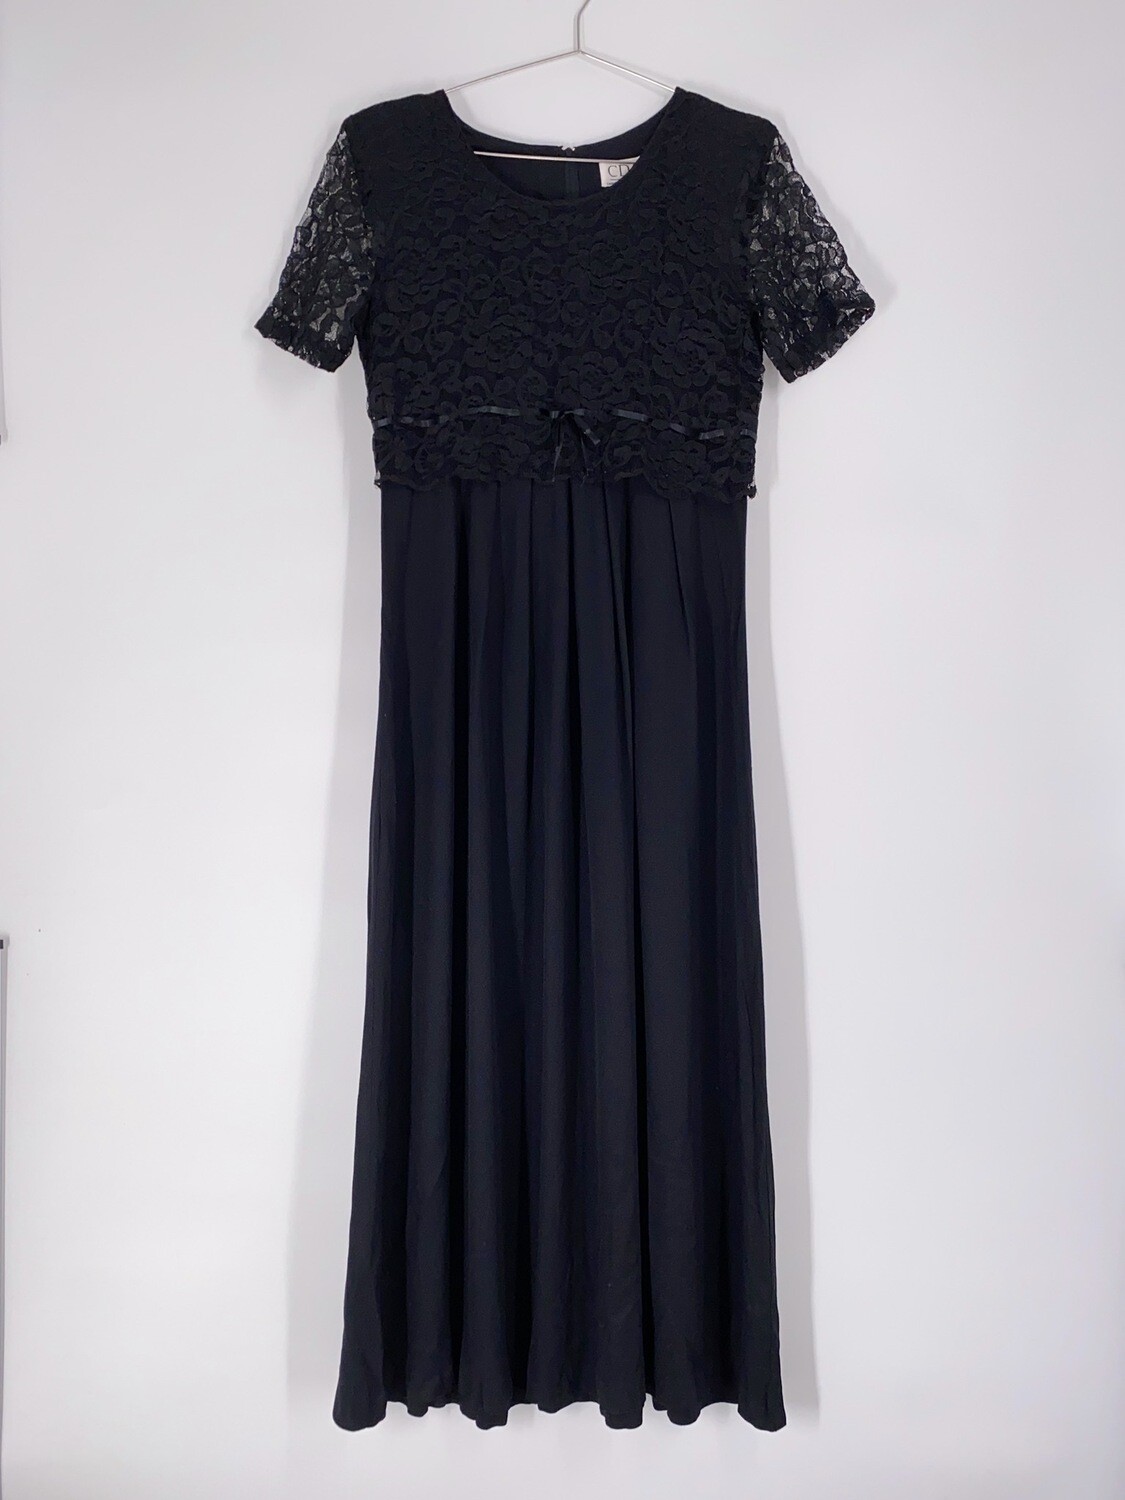 Black Lace Top Dress Size M